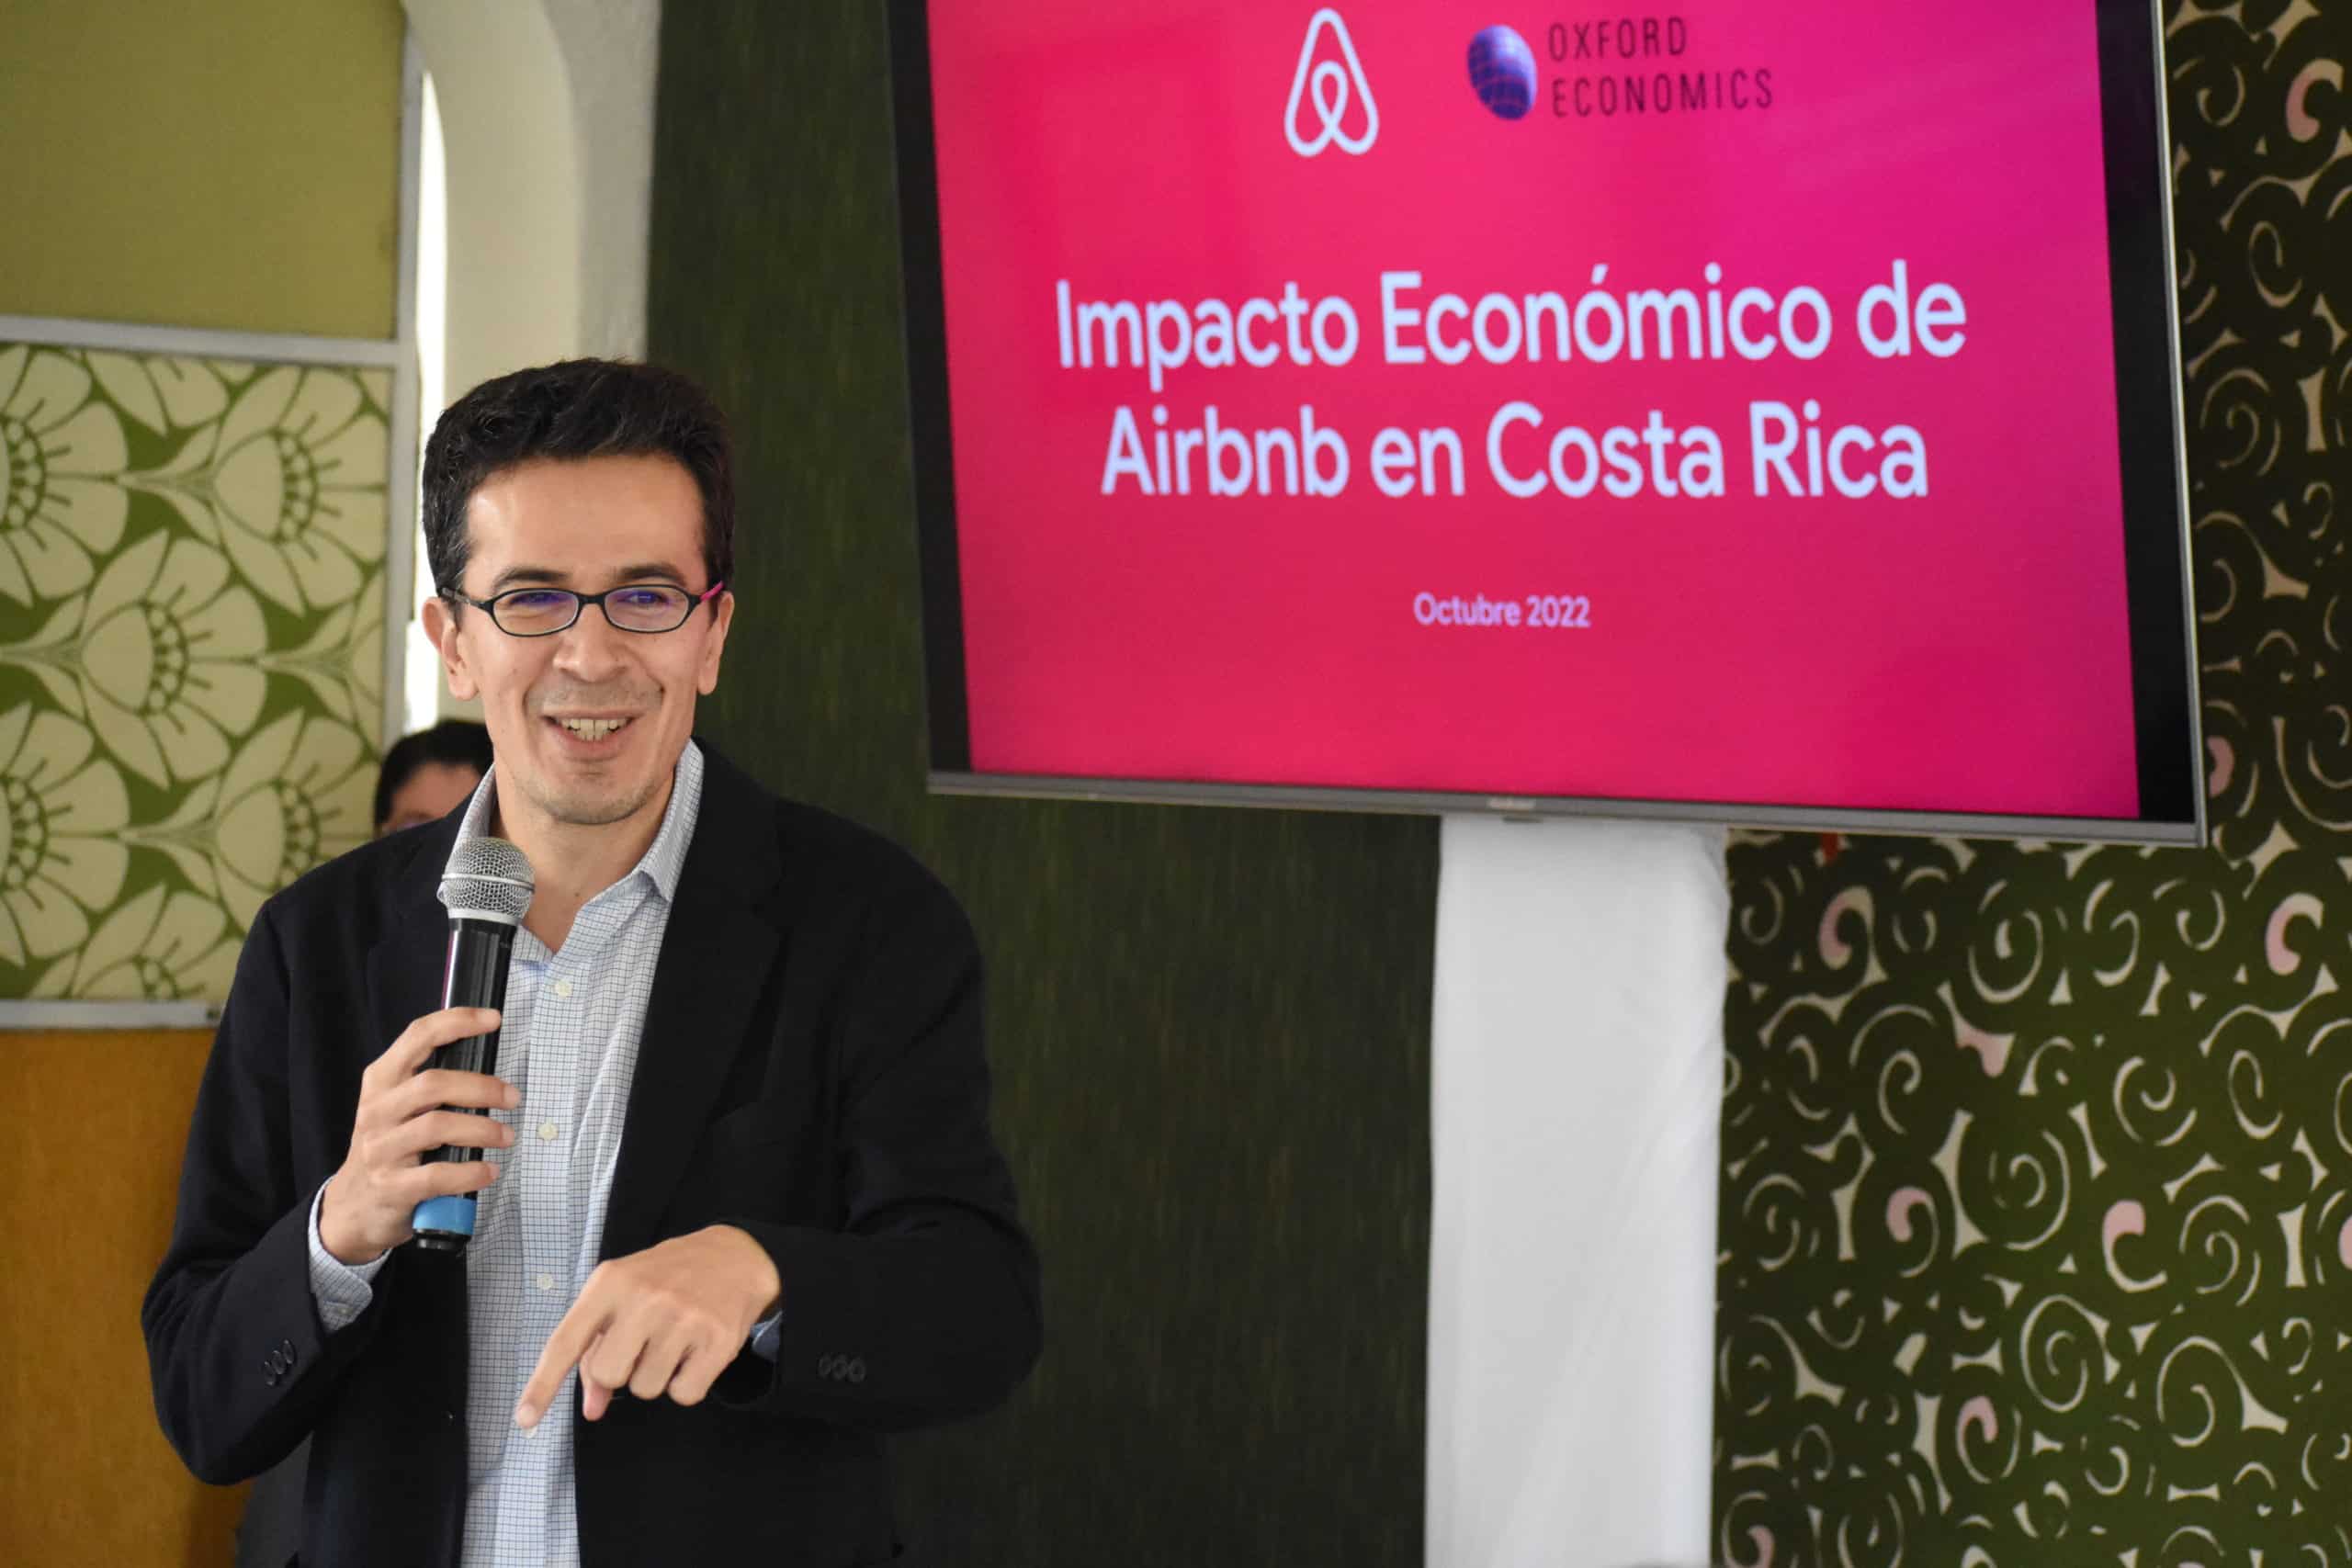 Huéspedes de Airbnb en Costa Rica generaron $493 millones en gastos como comida y restaurantes